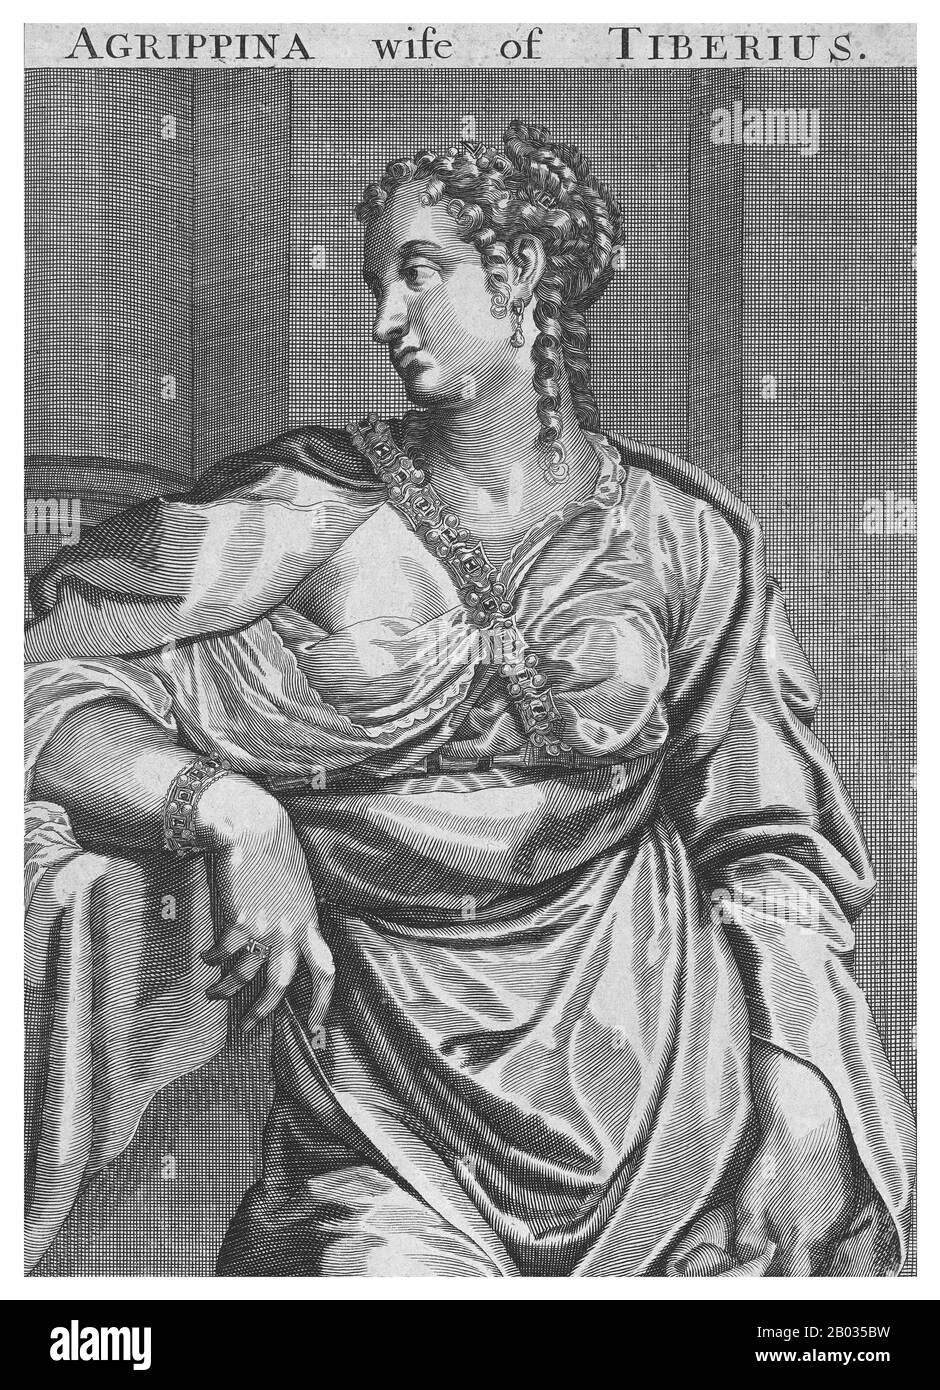 Vipsania Agrippina (36 v. Chr. - 20 u. z.) wurde vor ihrem ersten Geburtstag von ihrem Vater Marcus Vipsanius Agrippa und Octavian mit Tiberius verlobt. Sie waren in 19 v. Chr. verheiratet. Ihr Sohn Drusus Julius Cäsar wurde 14 v. Chr. geboren. Tiberius war jedoch gezwungen, sich von Vipsania zu scheiden und Augustus' Tochter Julia die ältere in 11 v. Chr. zu heiraten, eine Aktion, die er nie aufhörte, sein ganzes Leben zu bereuen. Sie wurde noch im selben Jahr mit dem Senator Gaius Asinius Gallus Saloninus verheiratet, mit dem sie mindestens sechs Söhne hatte. Vipsania verabschiedete sich schließlich im Jahr 20 CE. Stockfoto